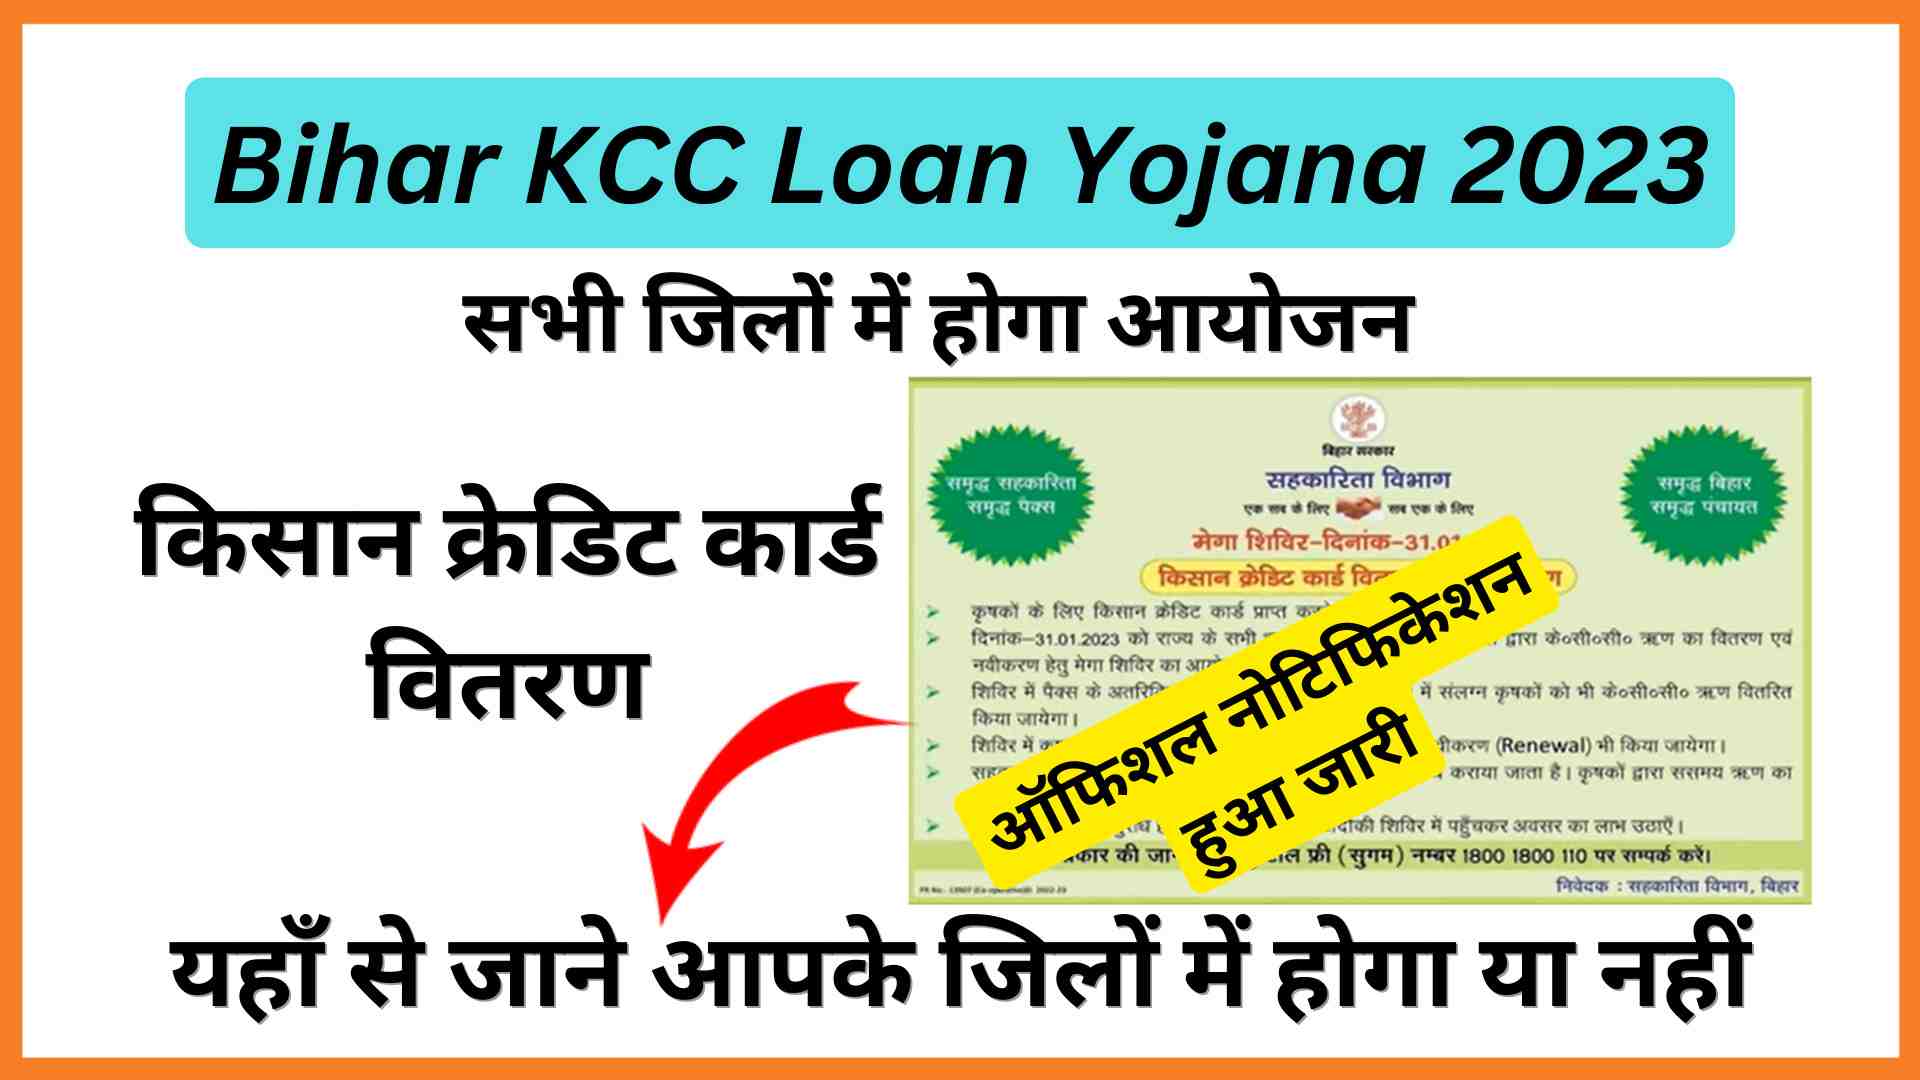 Bihar KCC Loan Yojana 2023